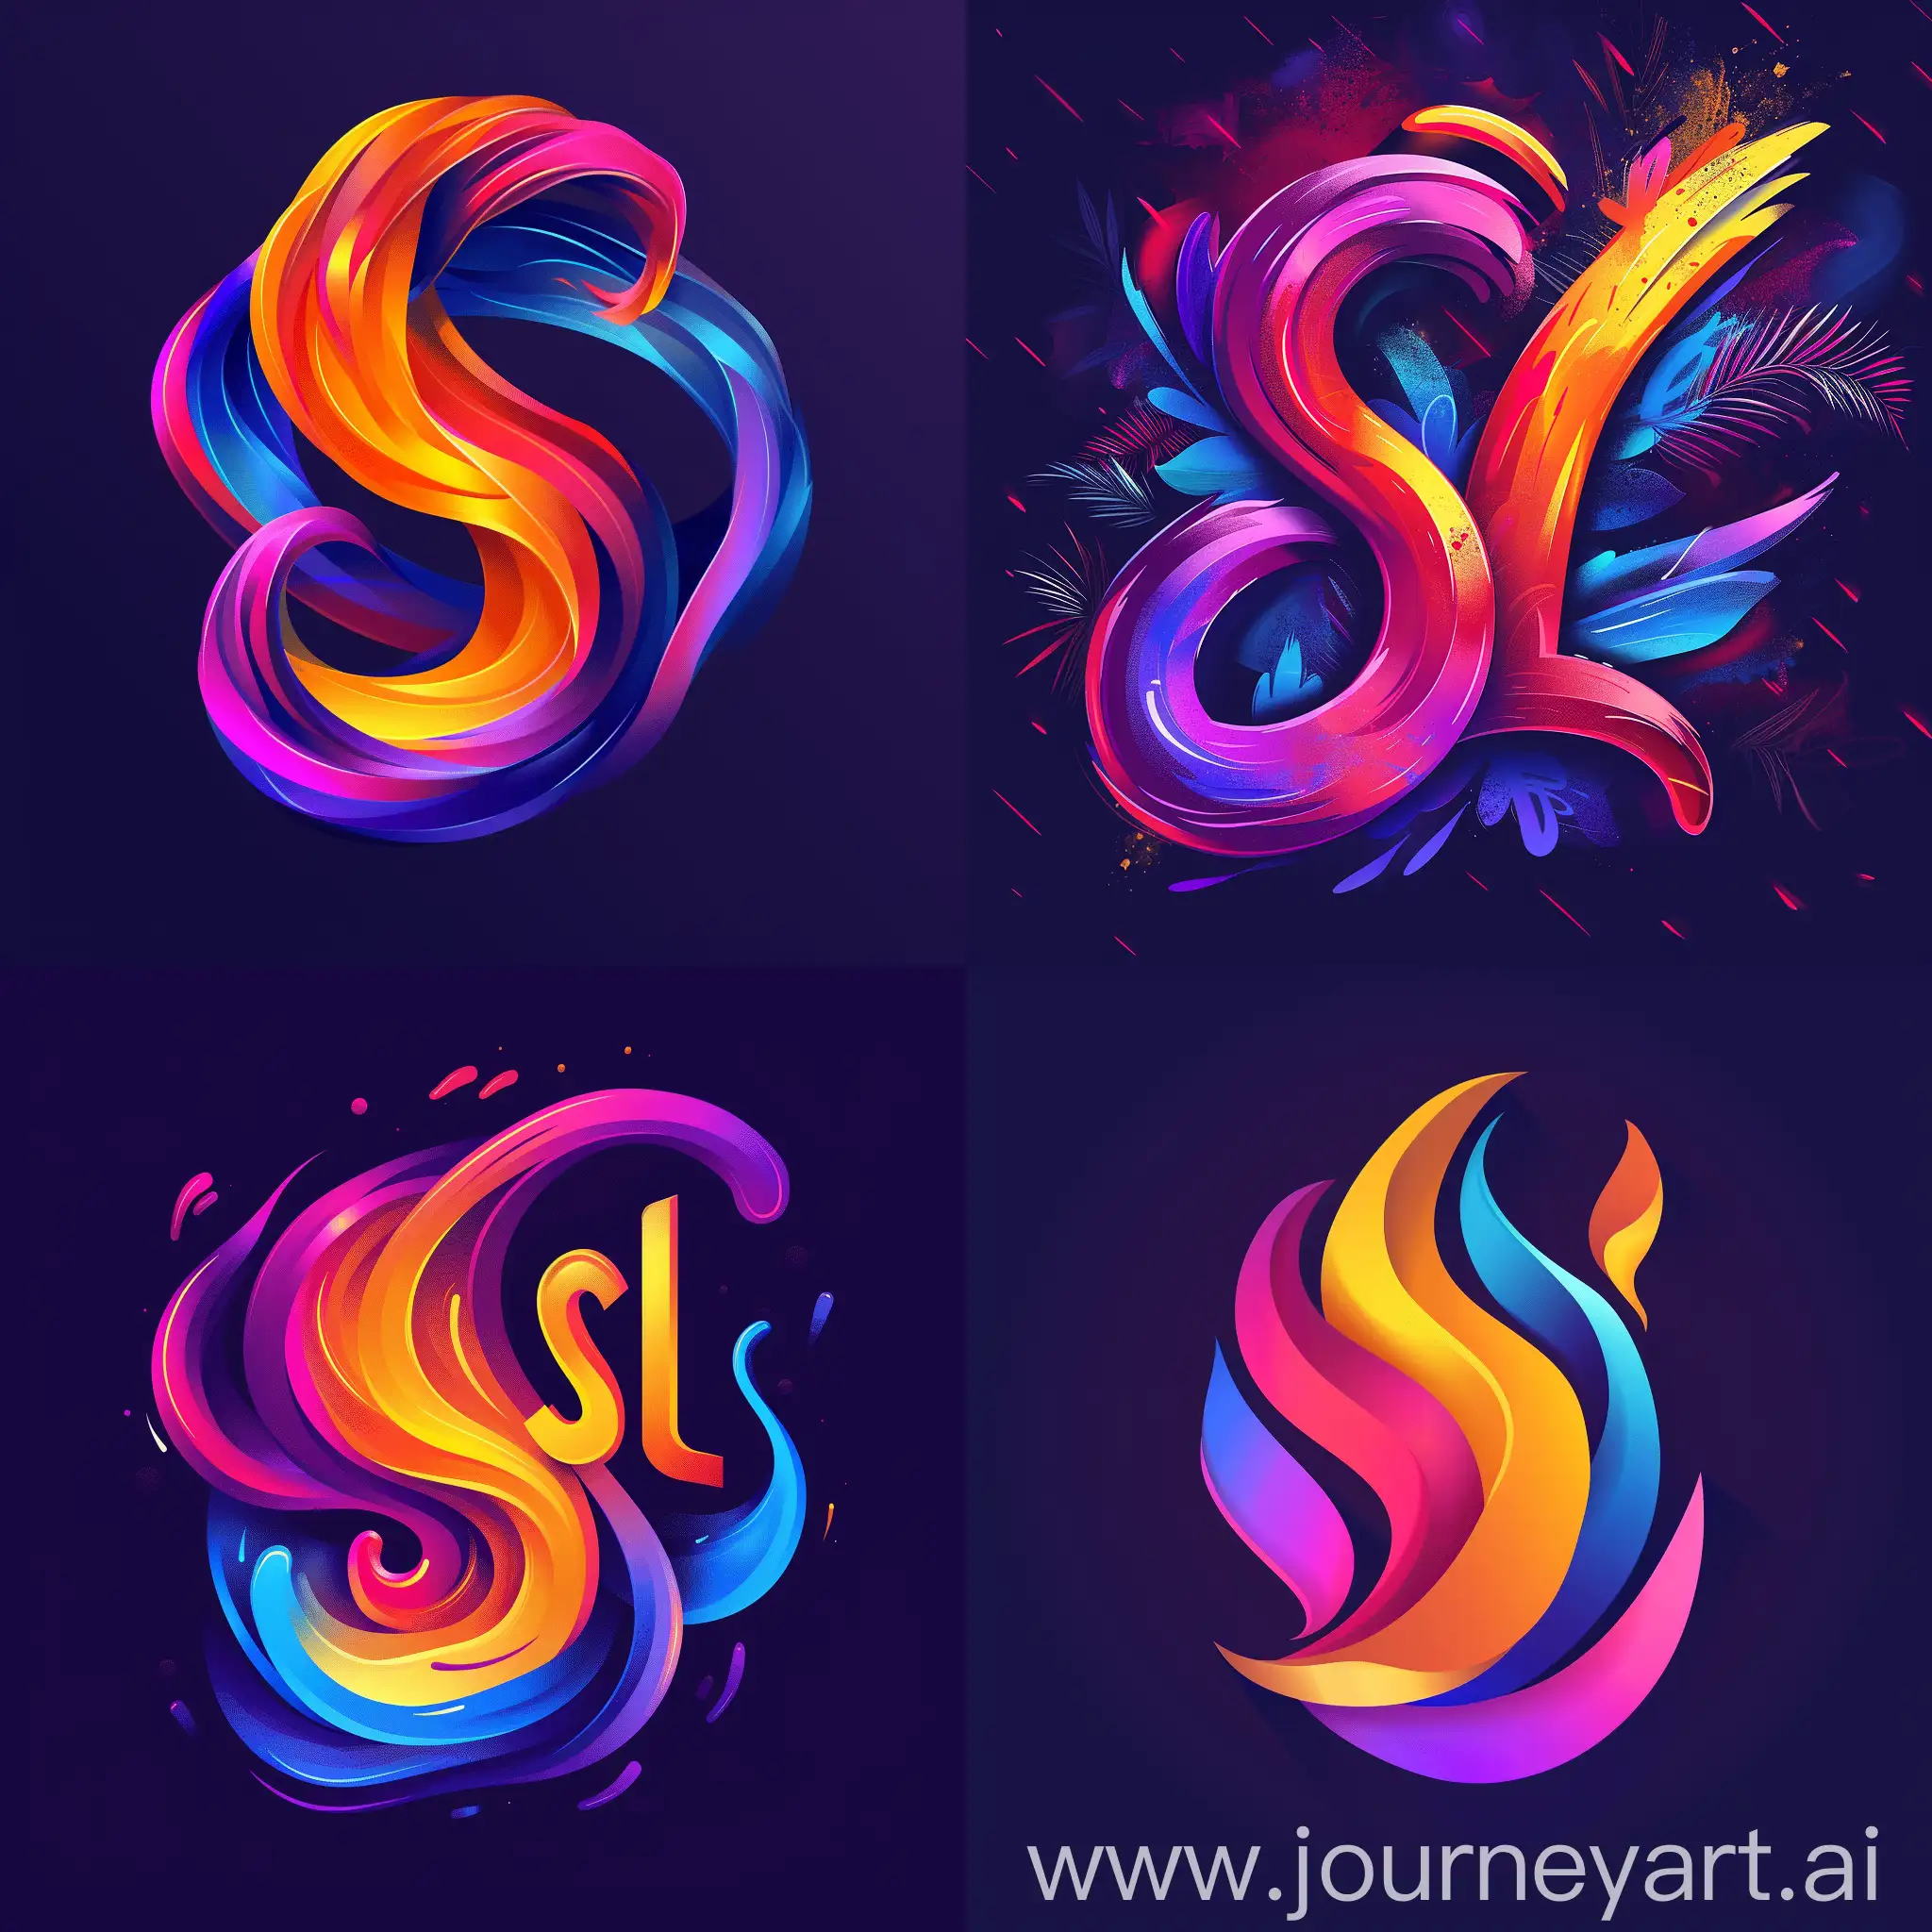 Эмоциональный и яркий логотип "SL", с яркими цветами и абстрактными формами, вызывающий чувство адреналина и азарта у зрителей и участников, --s 250